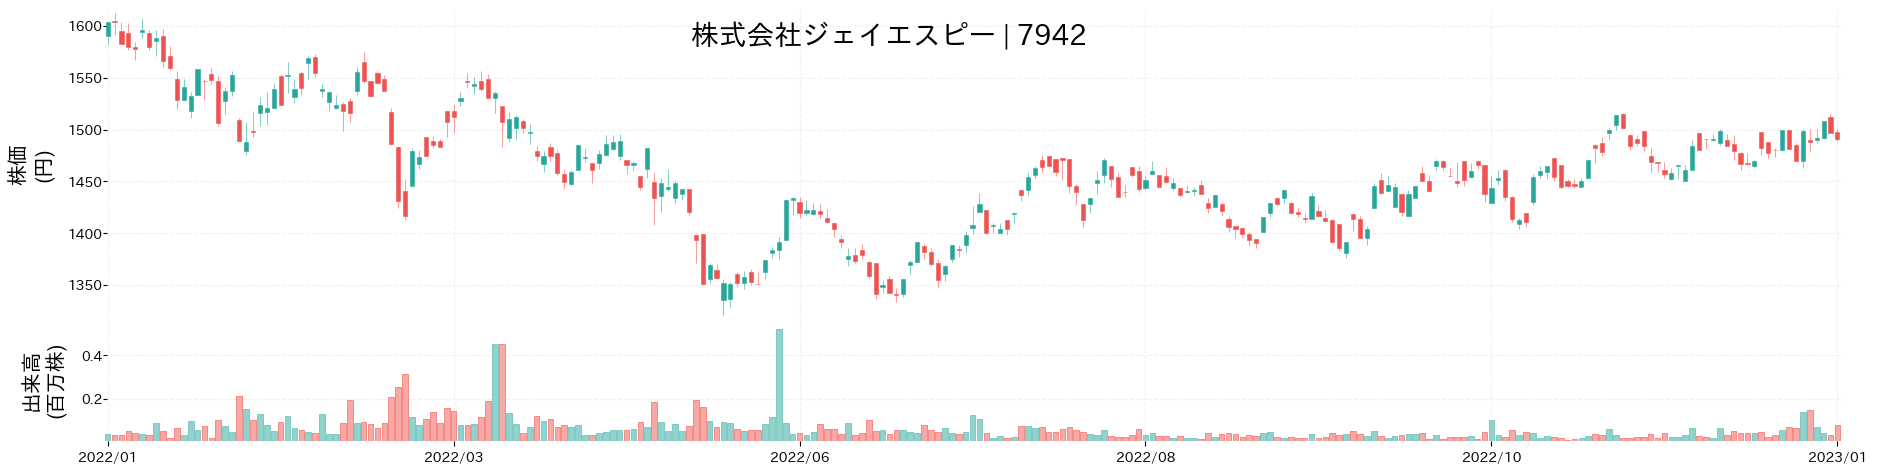 ジェイエスピーの株価推移(2022)